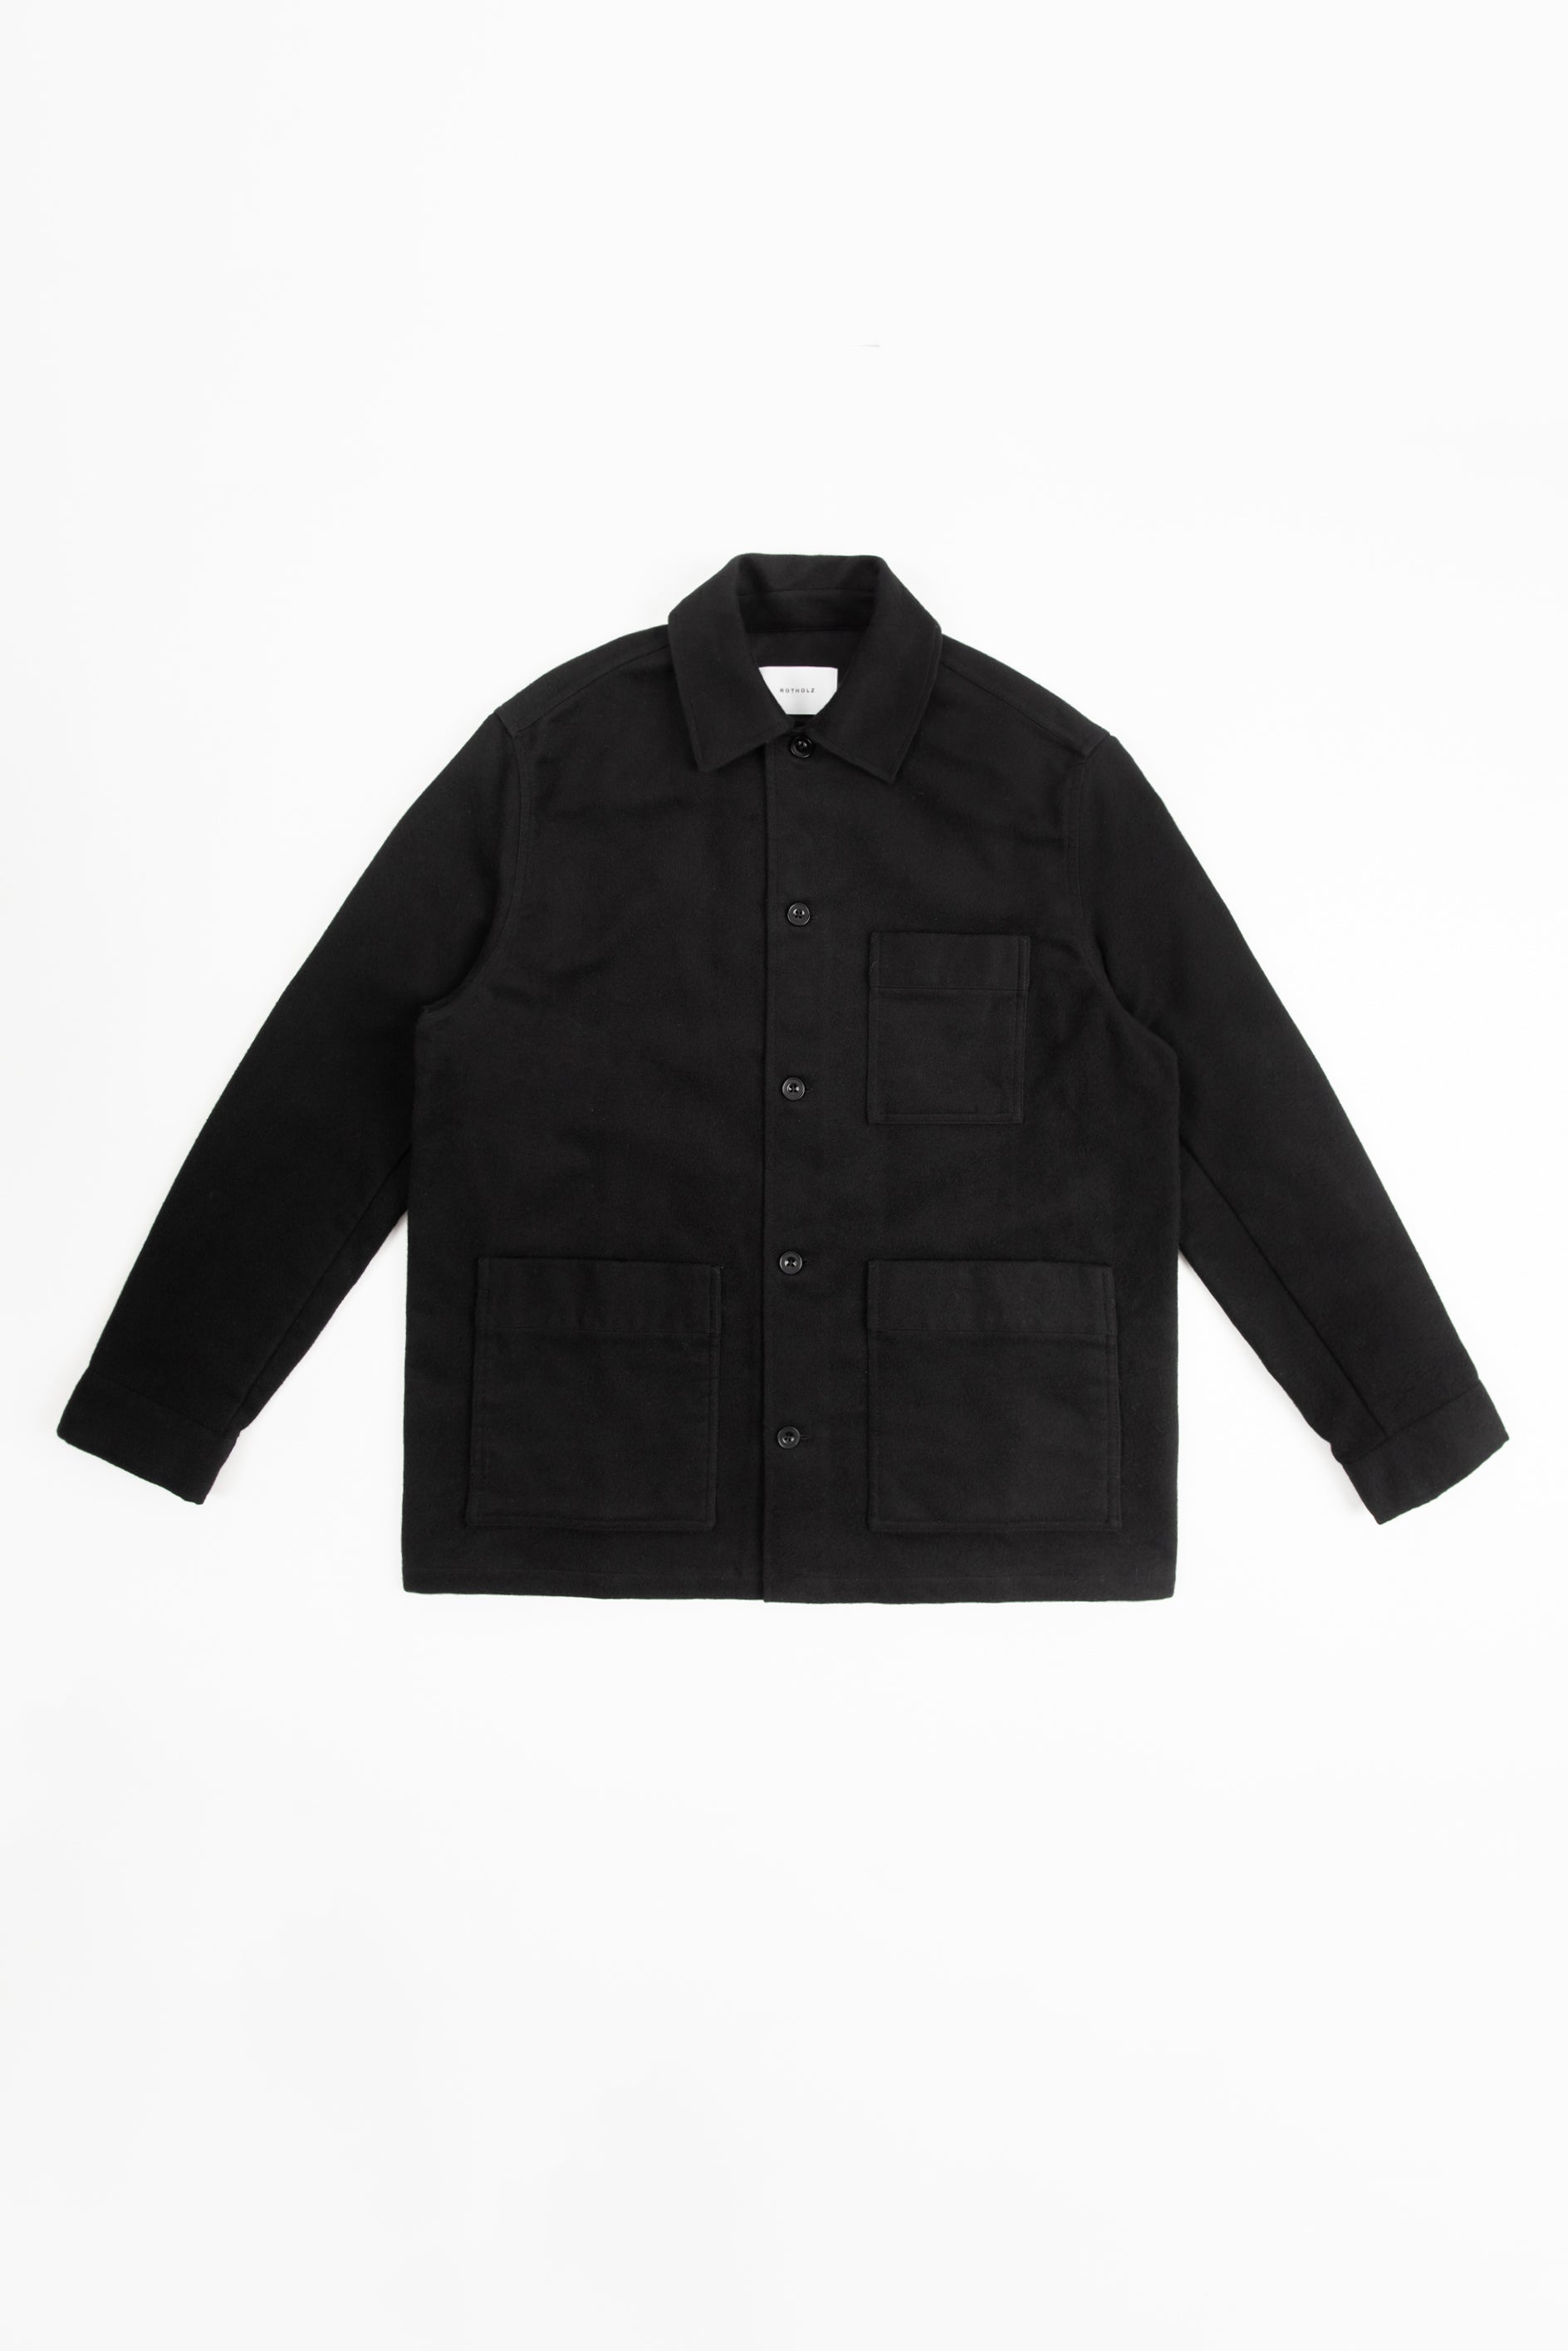 Schwarze Jacke Moleskin aus 100% Bio-Baumwolle von Rotholz